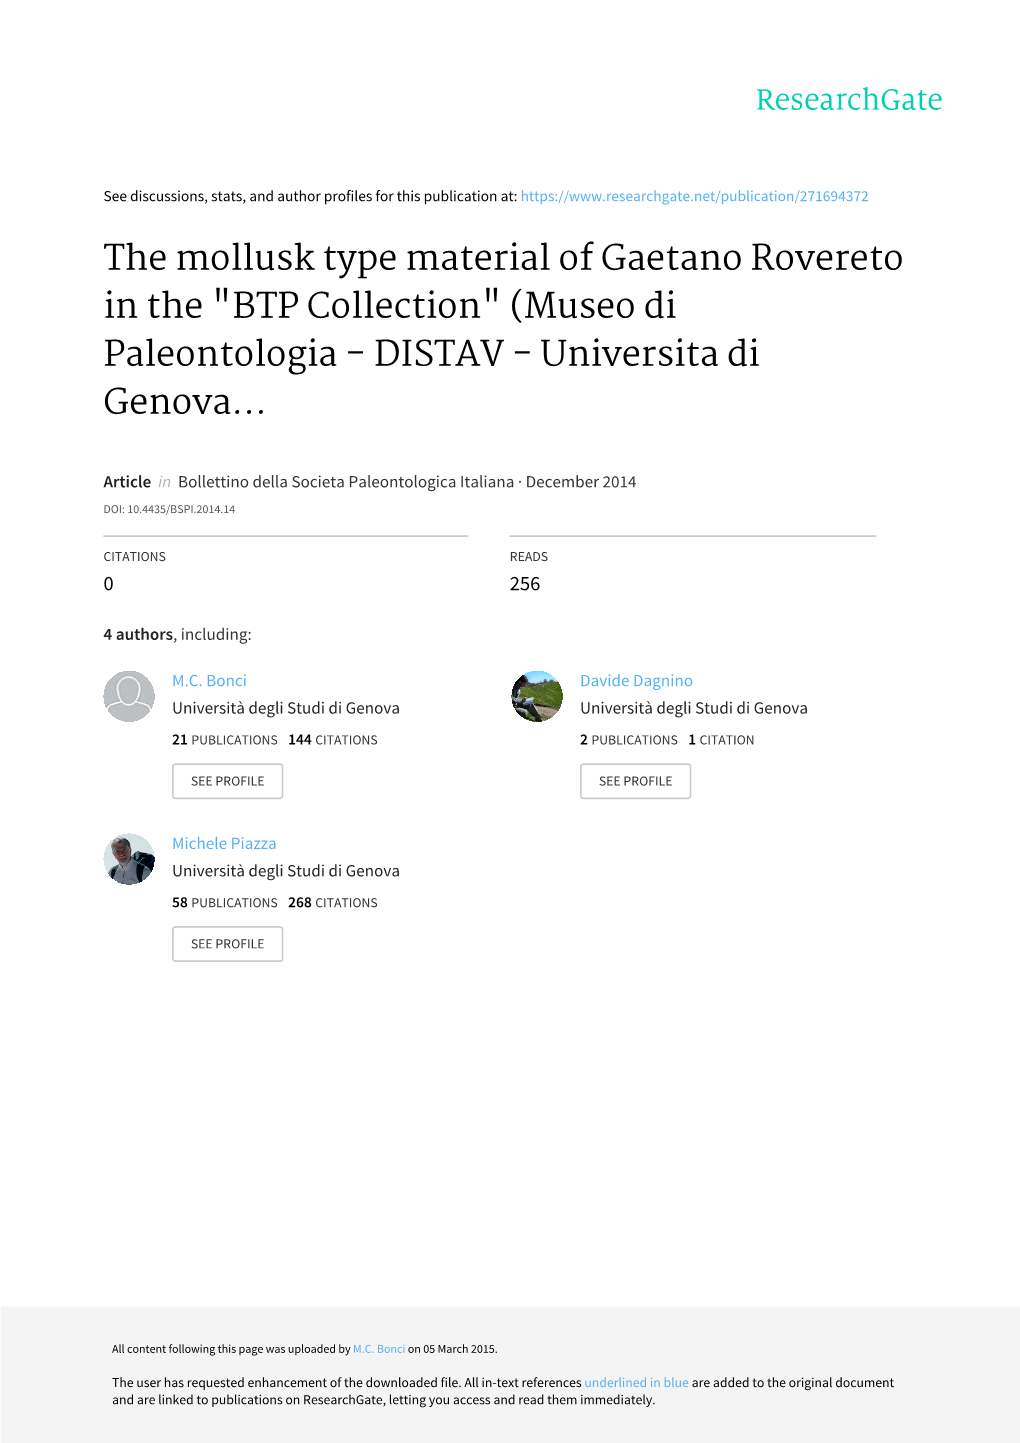 The Mollusk Type Material of Gaetano Rovereto in the "BTP Collection" (Museo Di Paleontologia - DISTAV - Universita Di Genova